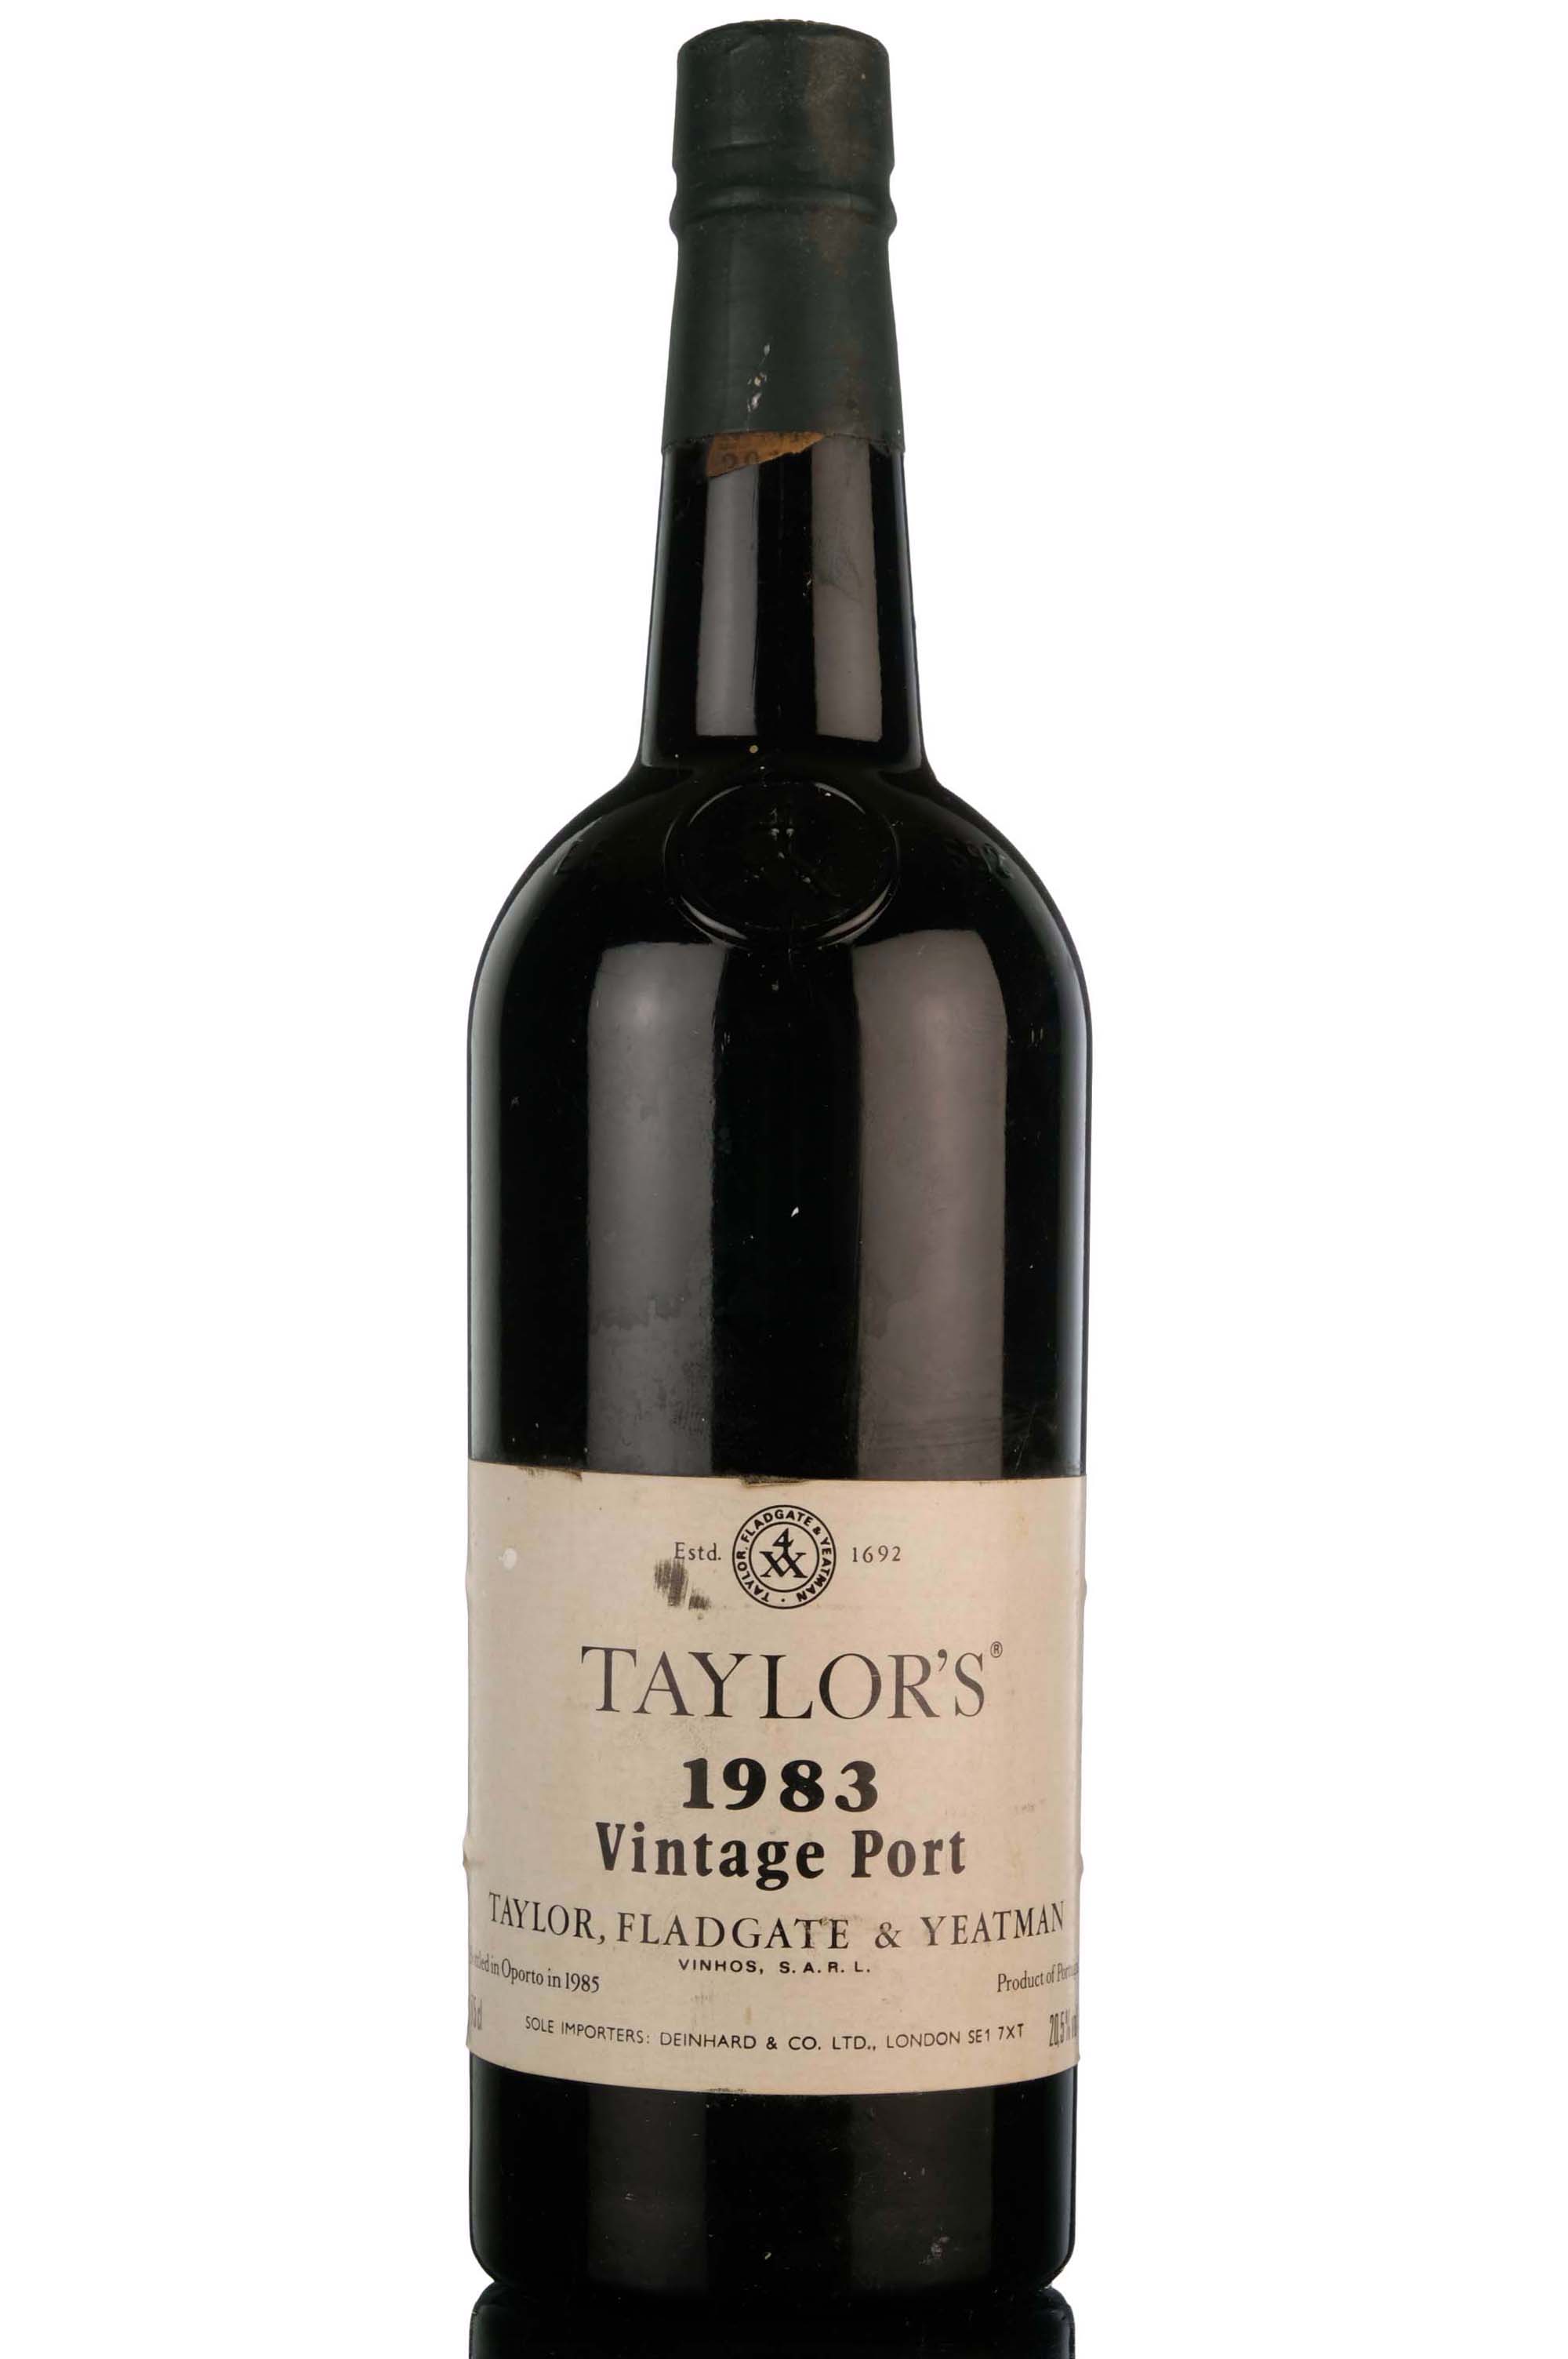 Taylors 1983 Vintage Port - Bottled 1985